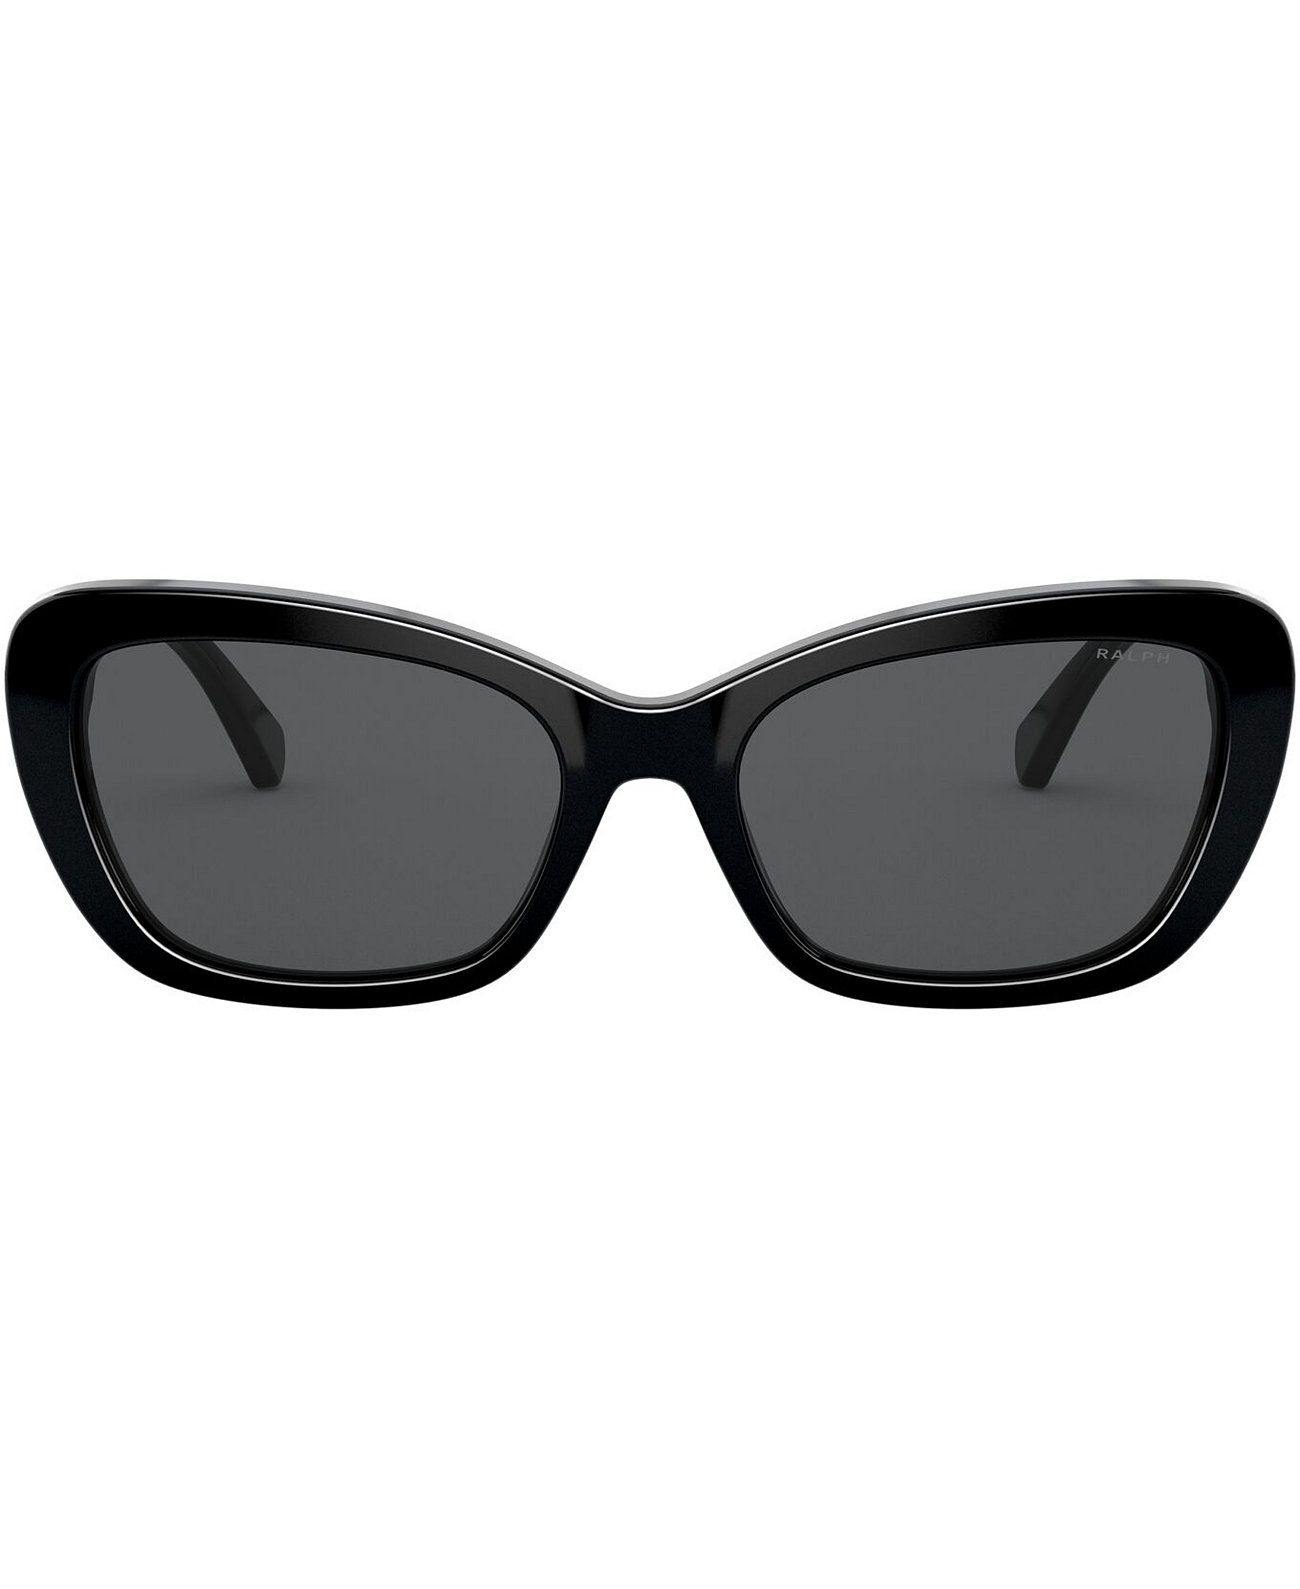 Солнцезащитные очки Ralph, RA5264 55 Ralph Lauren